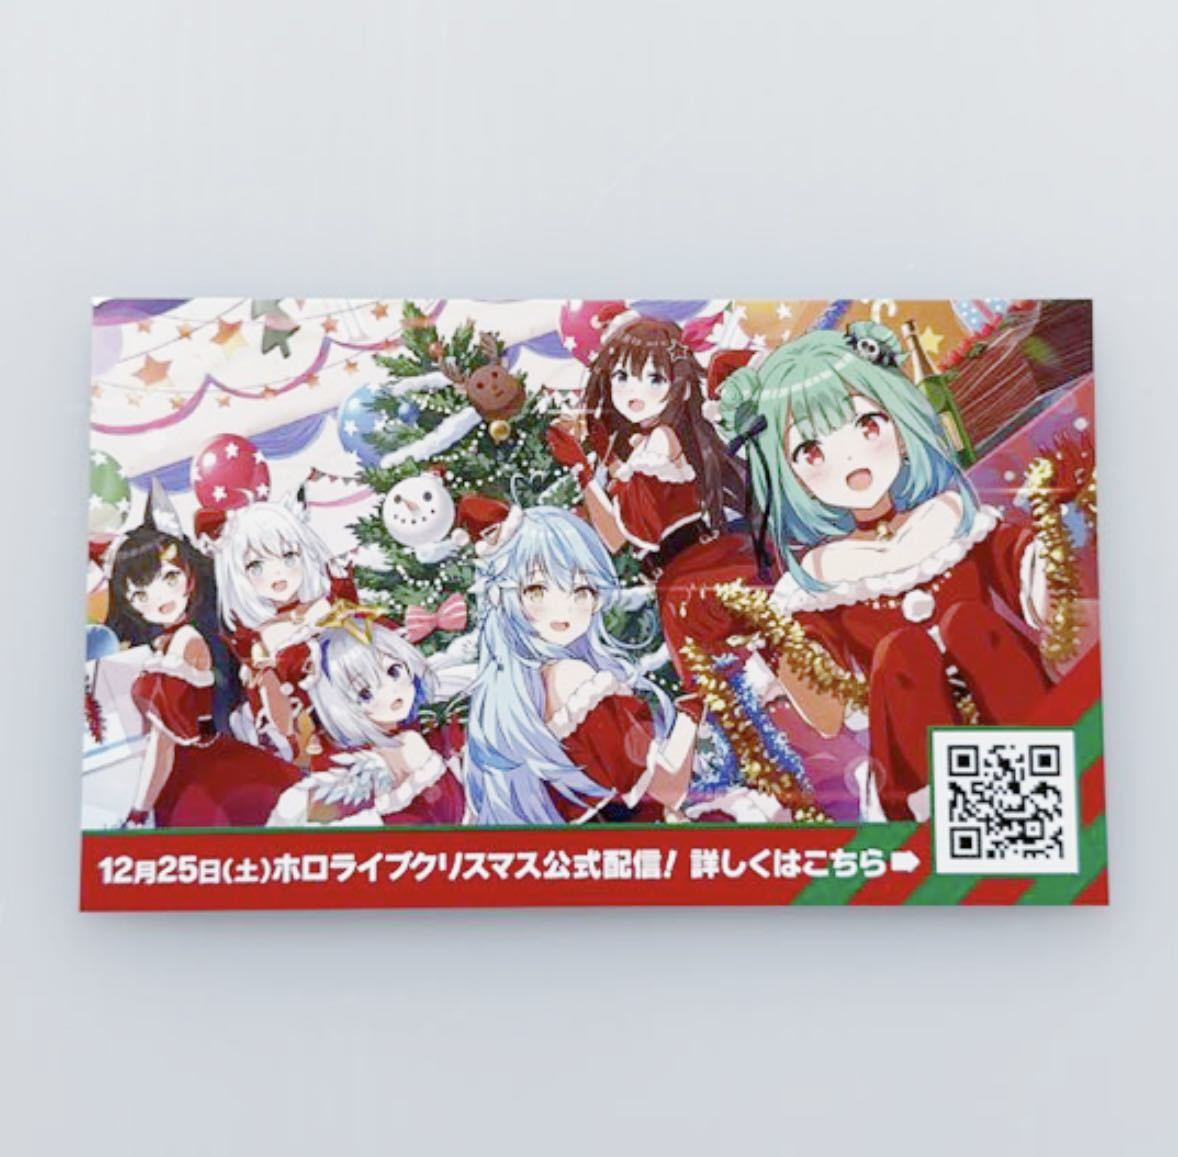 ホロライブ 販促 カード クリスマスver. 9×5.5cm 名刺サイズ hololive promotional card VTuber christmas version 3_画像1